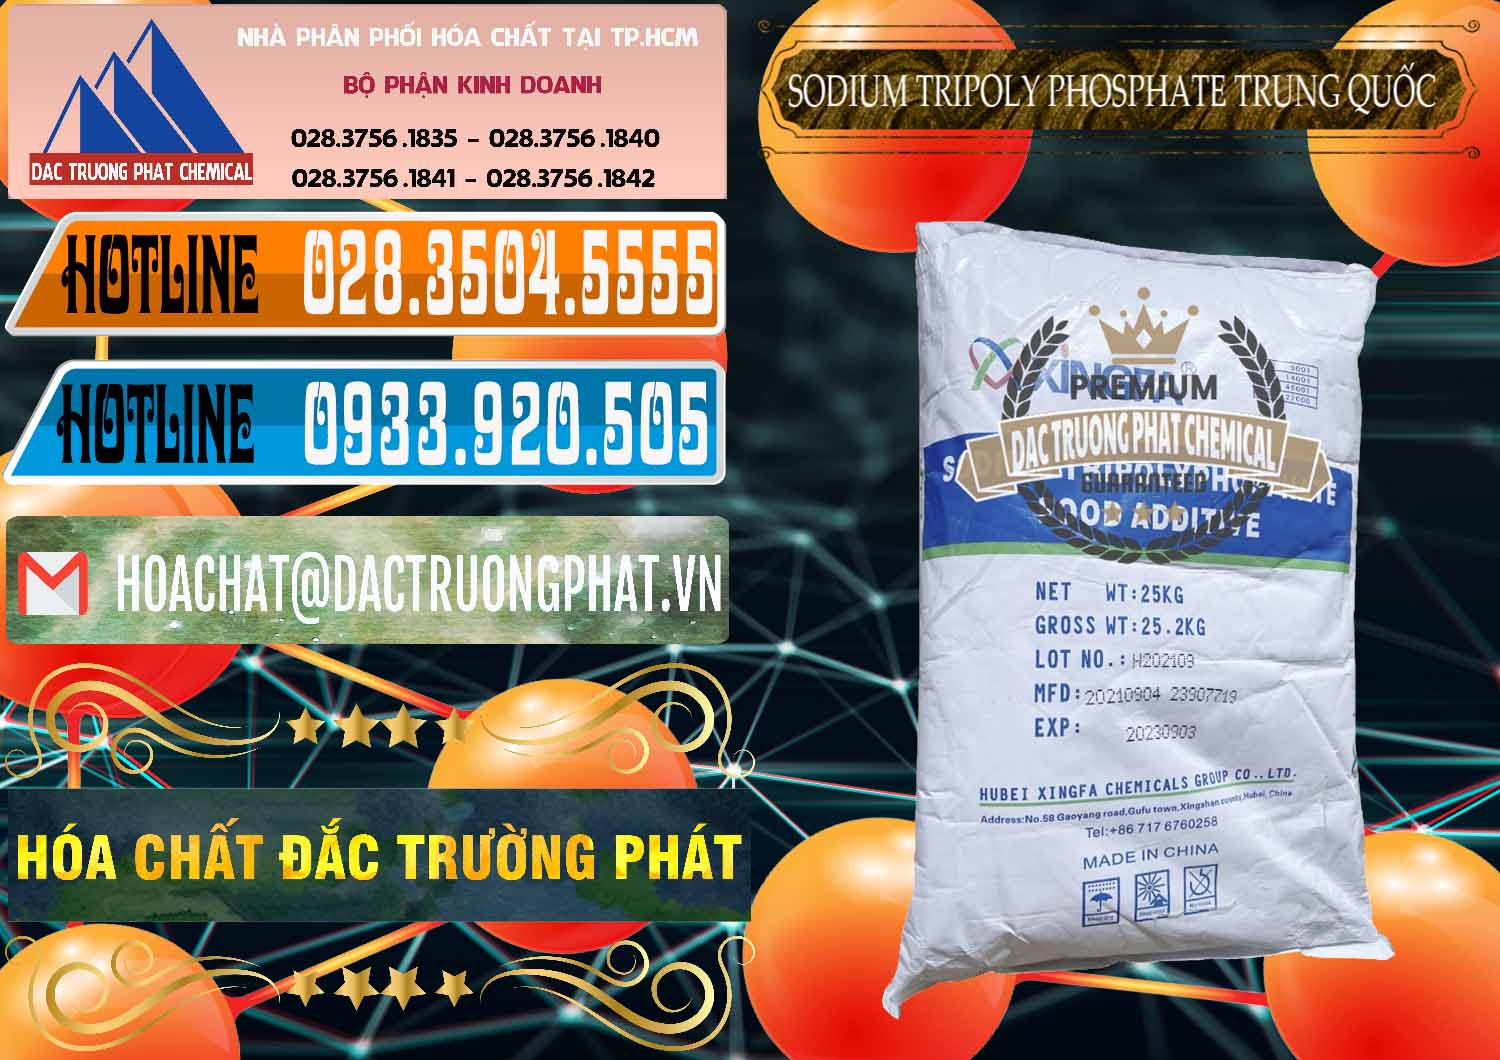 Cty chuyên cung ứng & bán Sodium Tripoly Phosphate - STPP 96% Xingfa Trung Quốc China - 0433 - Công ty chuyên phân phối và cung ứng hóa chất tại TP.HCM - stmp.net